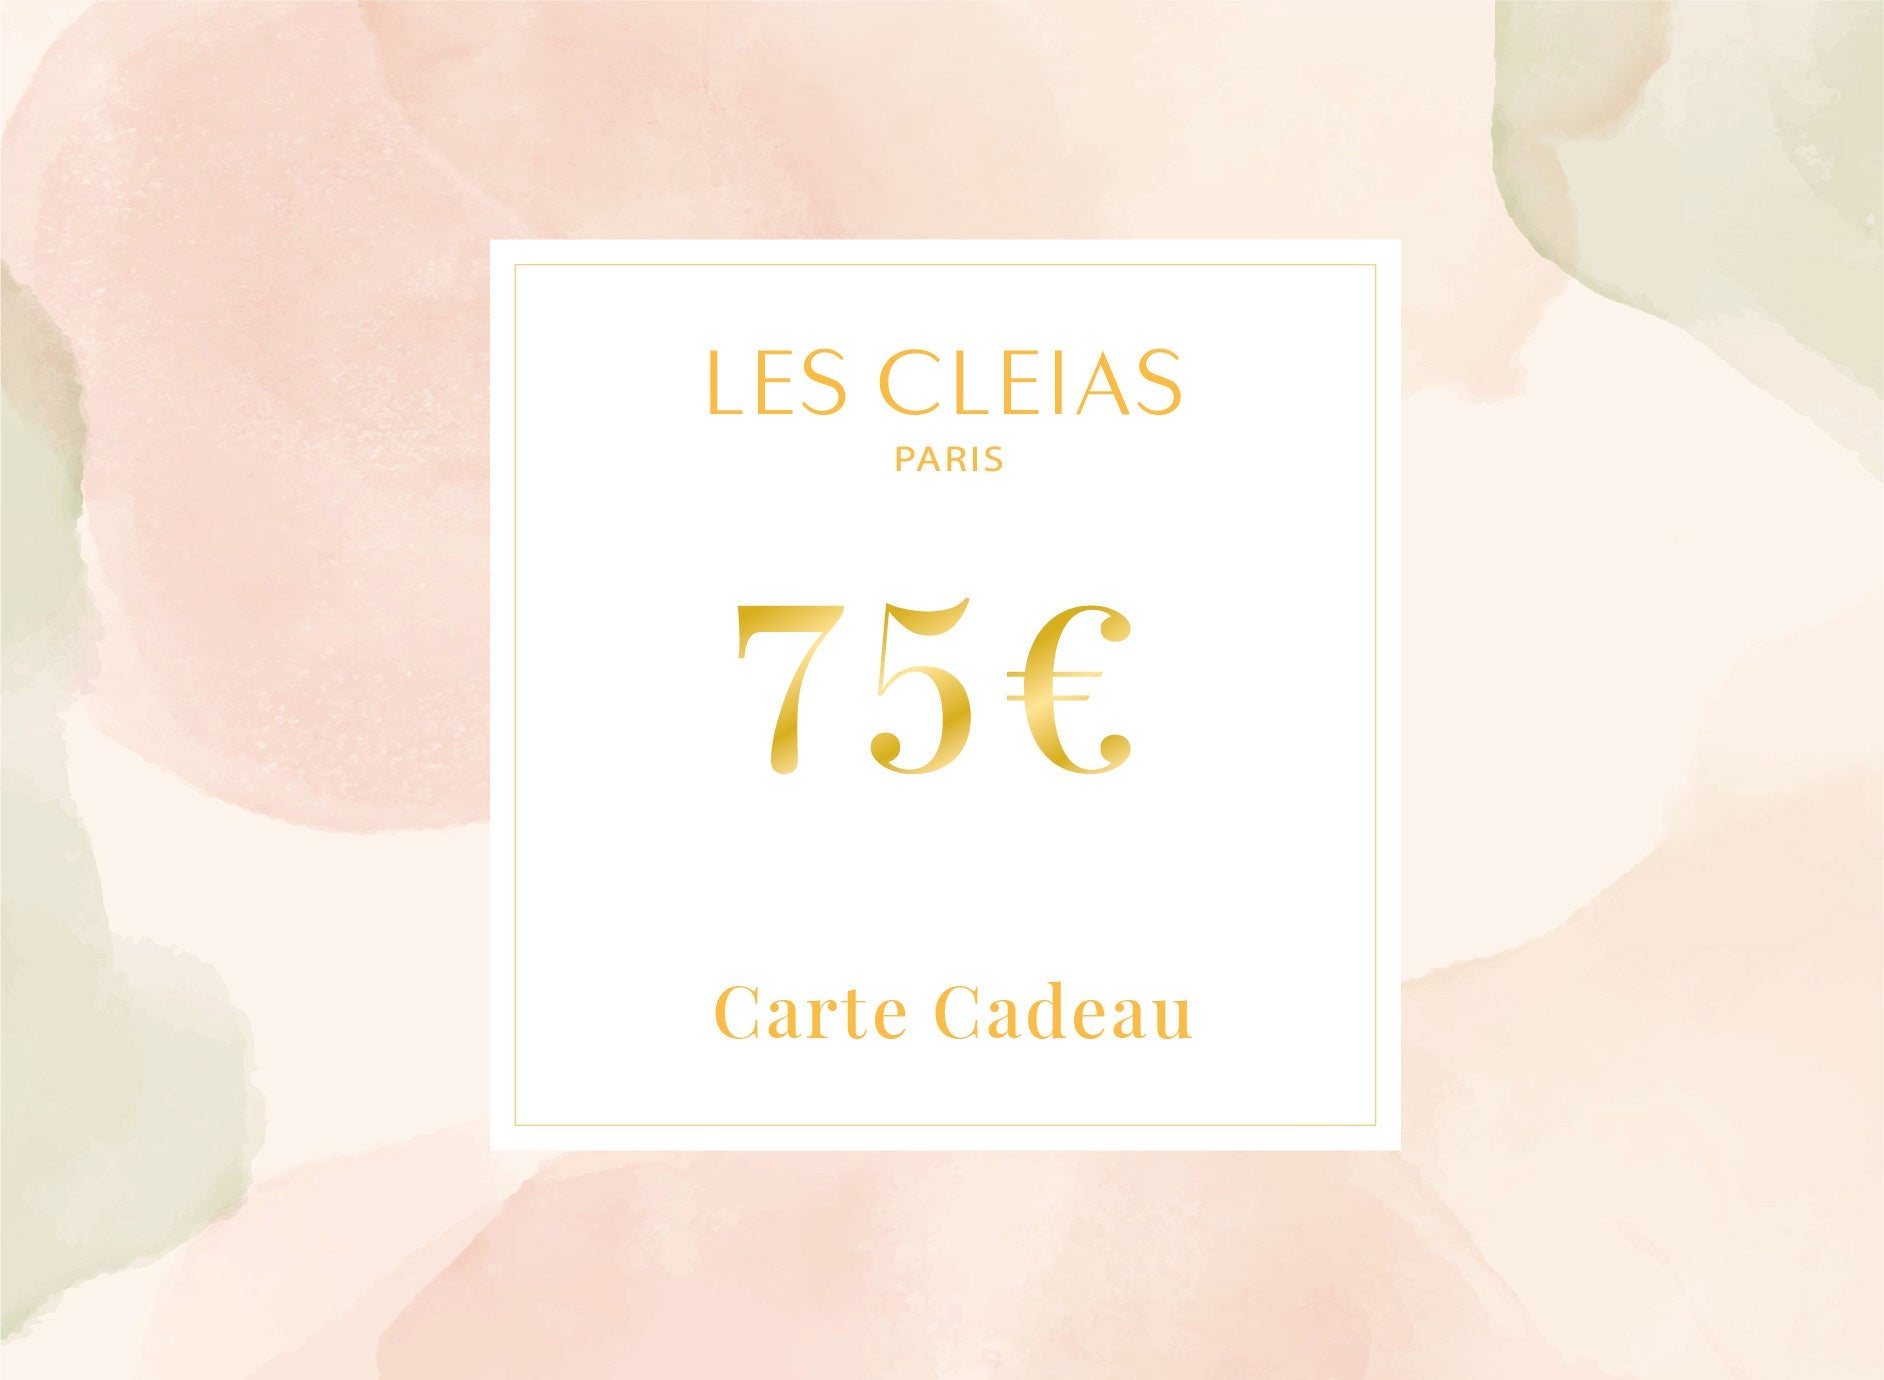 Carte Cadeau (75€) - Les Cleias